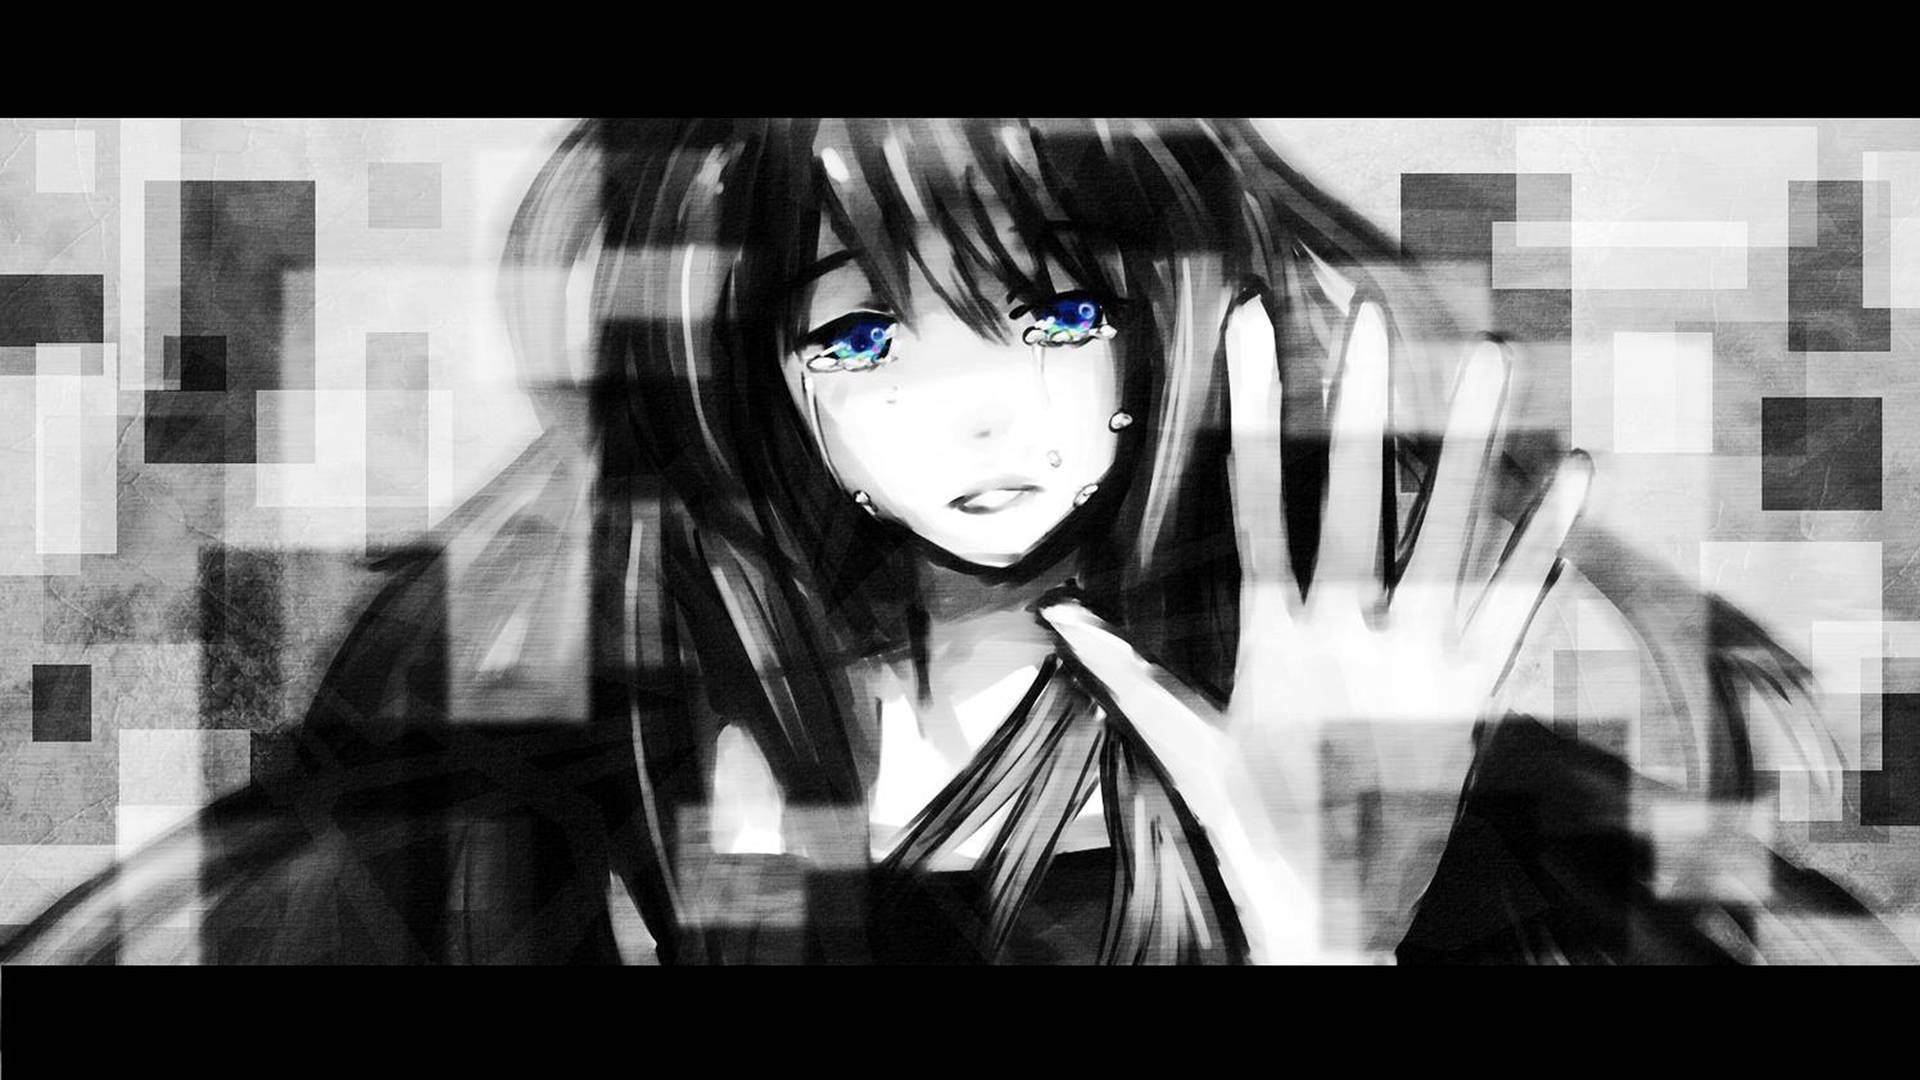 Sad Anime 4k Girl Crying And Raising Hand